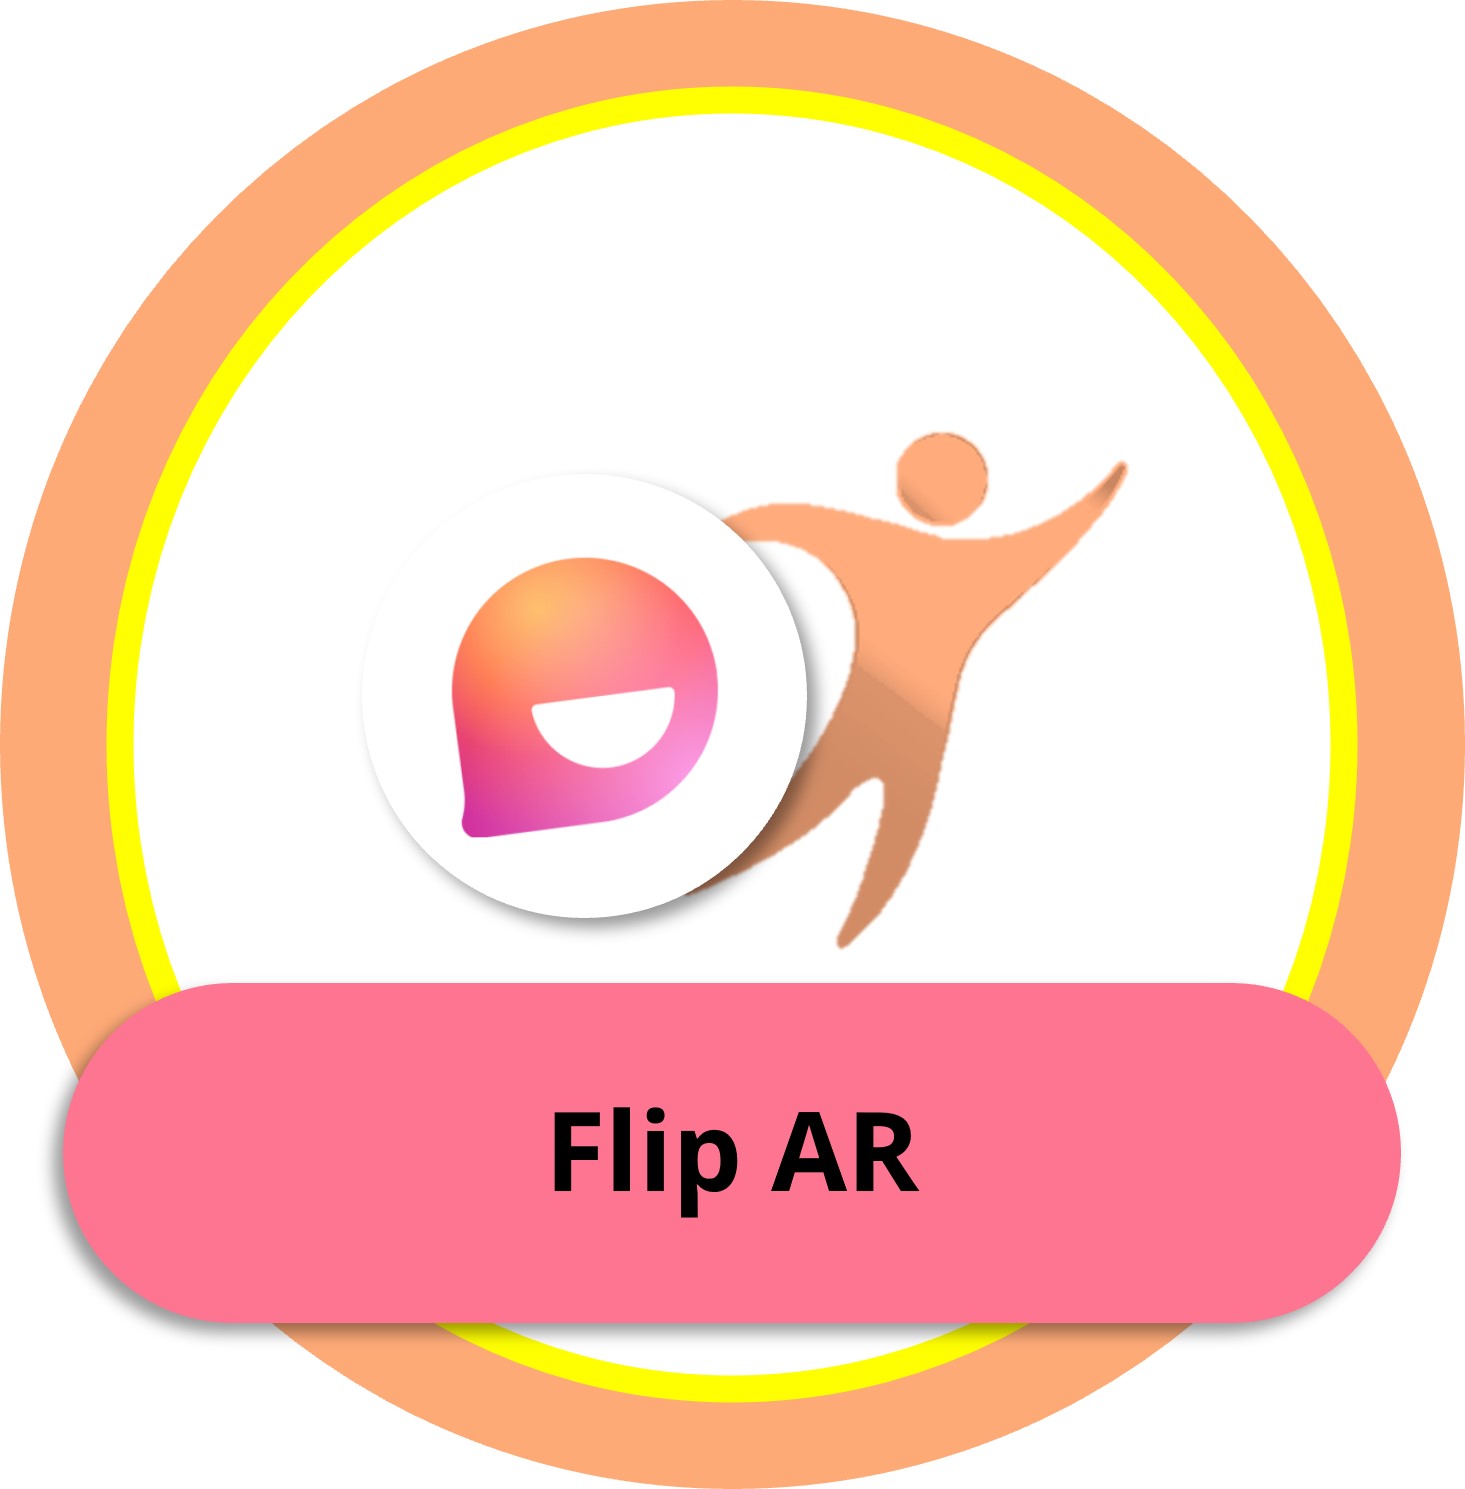 Flip AR